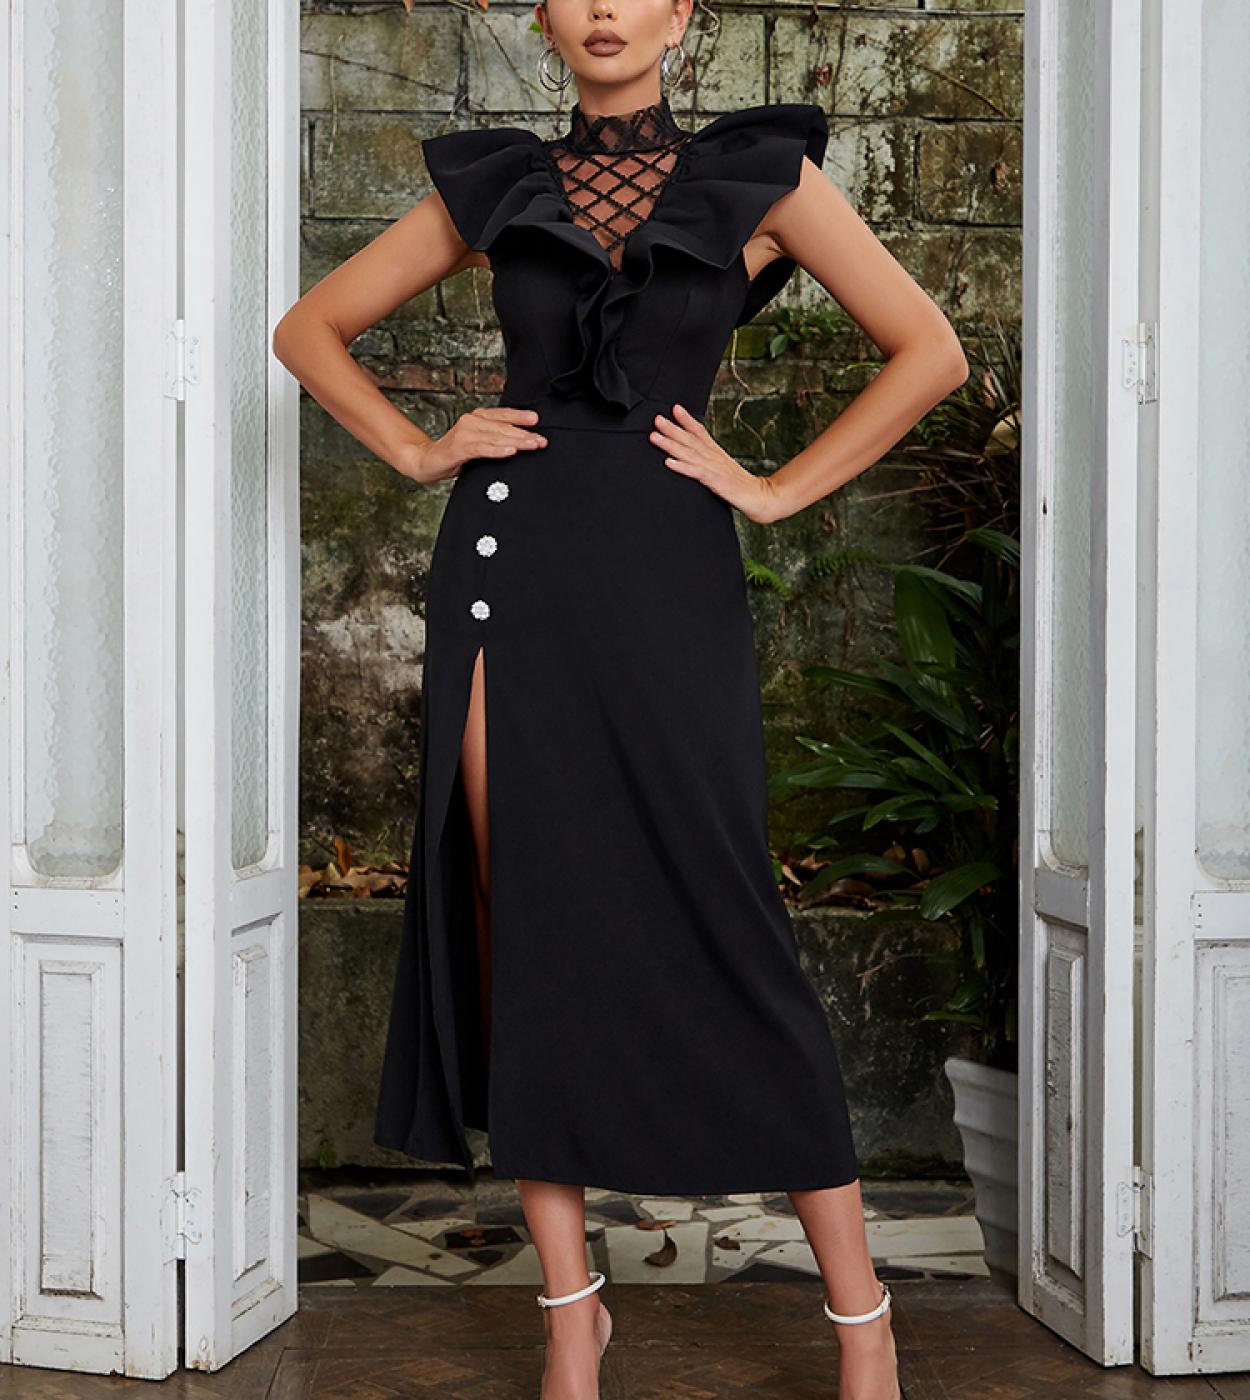  Butterfly Sleeve Ruffles Maxi Dress Elegant Black Ruffles Sleeveless Mesh Hollow Out Split Dress Celebrity Evening Part